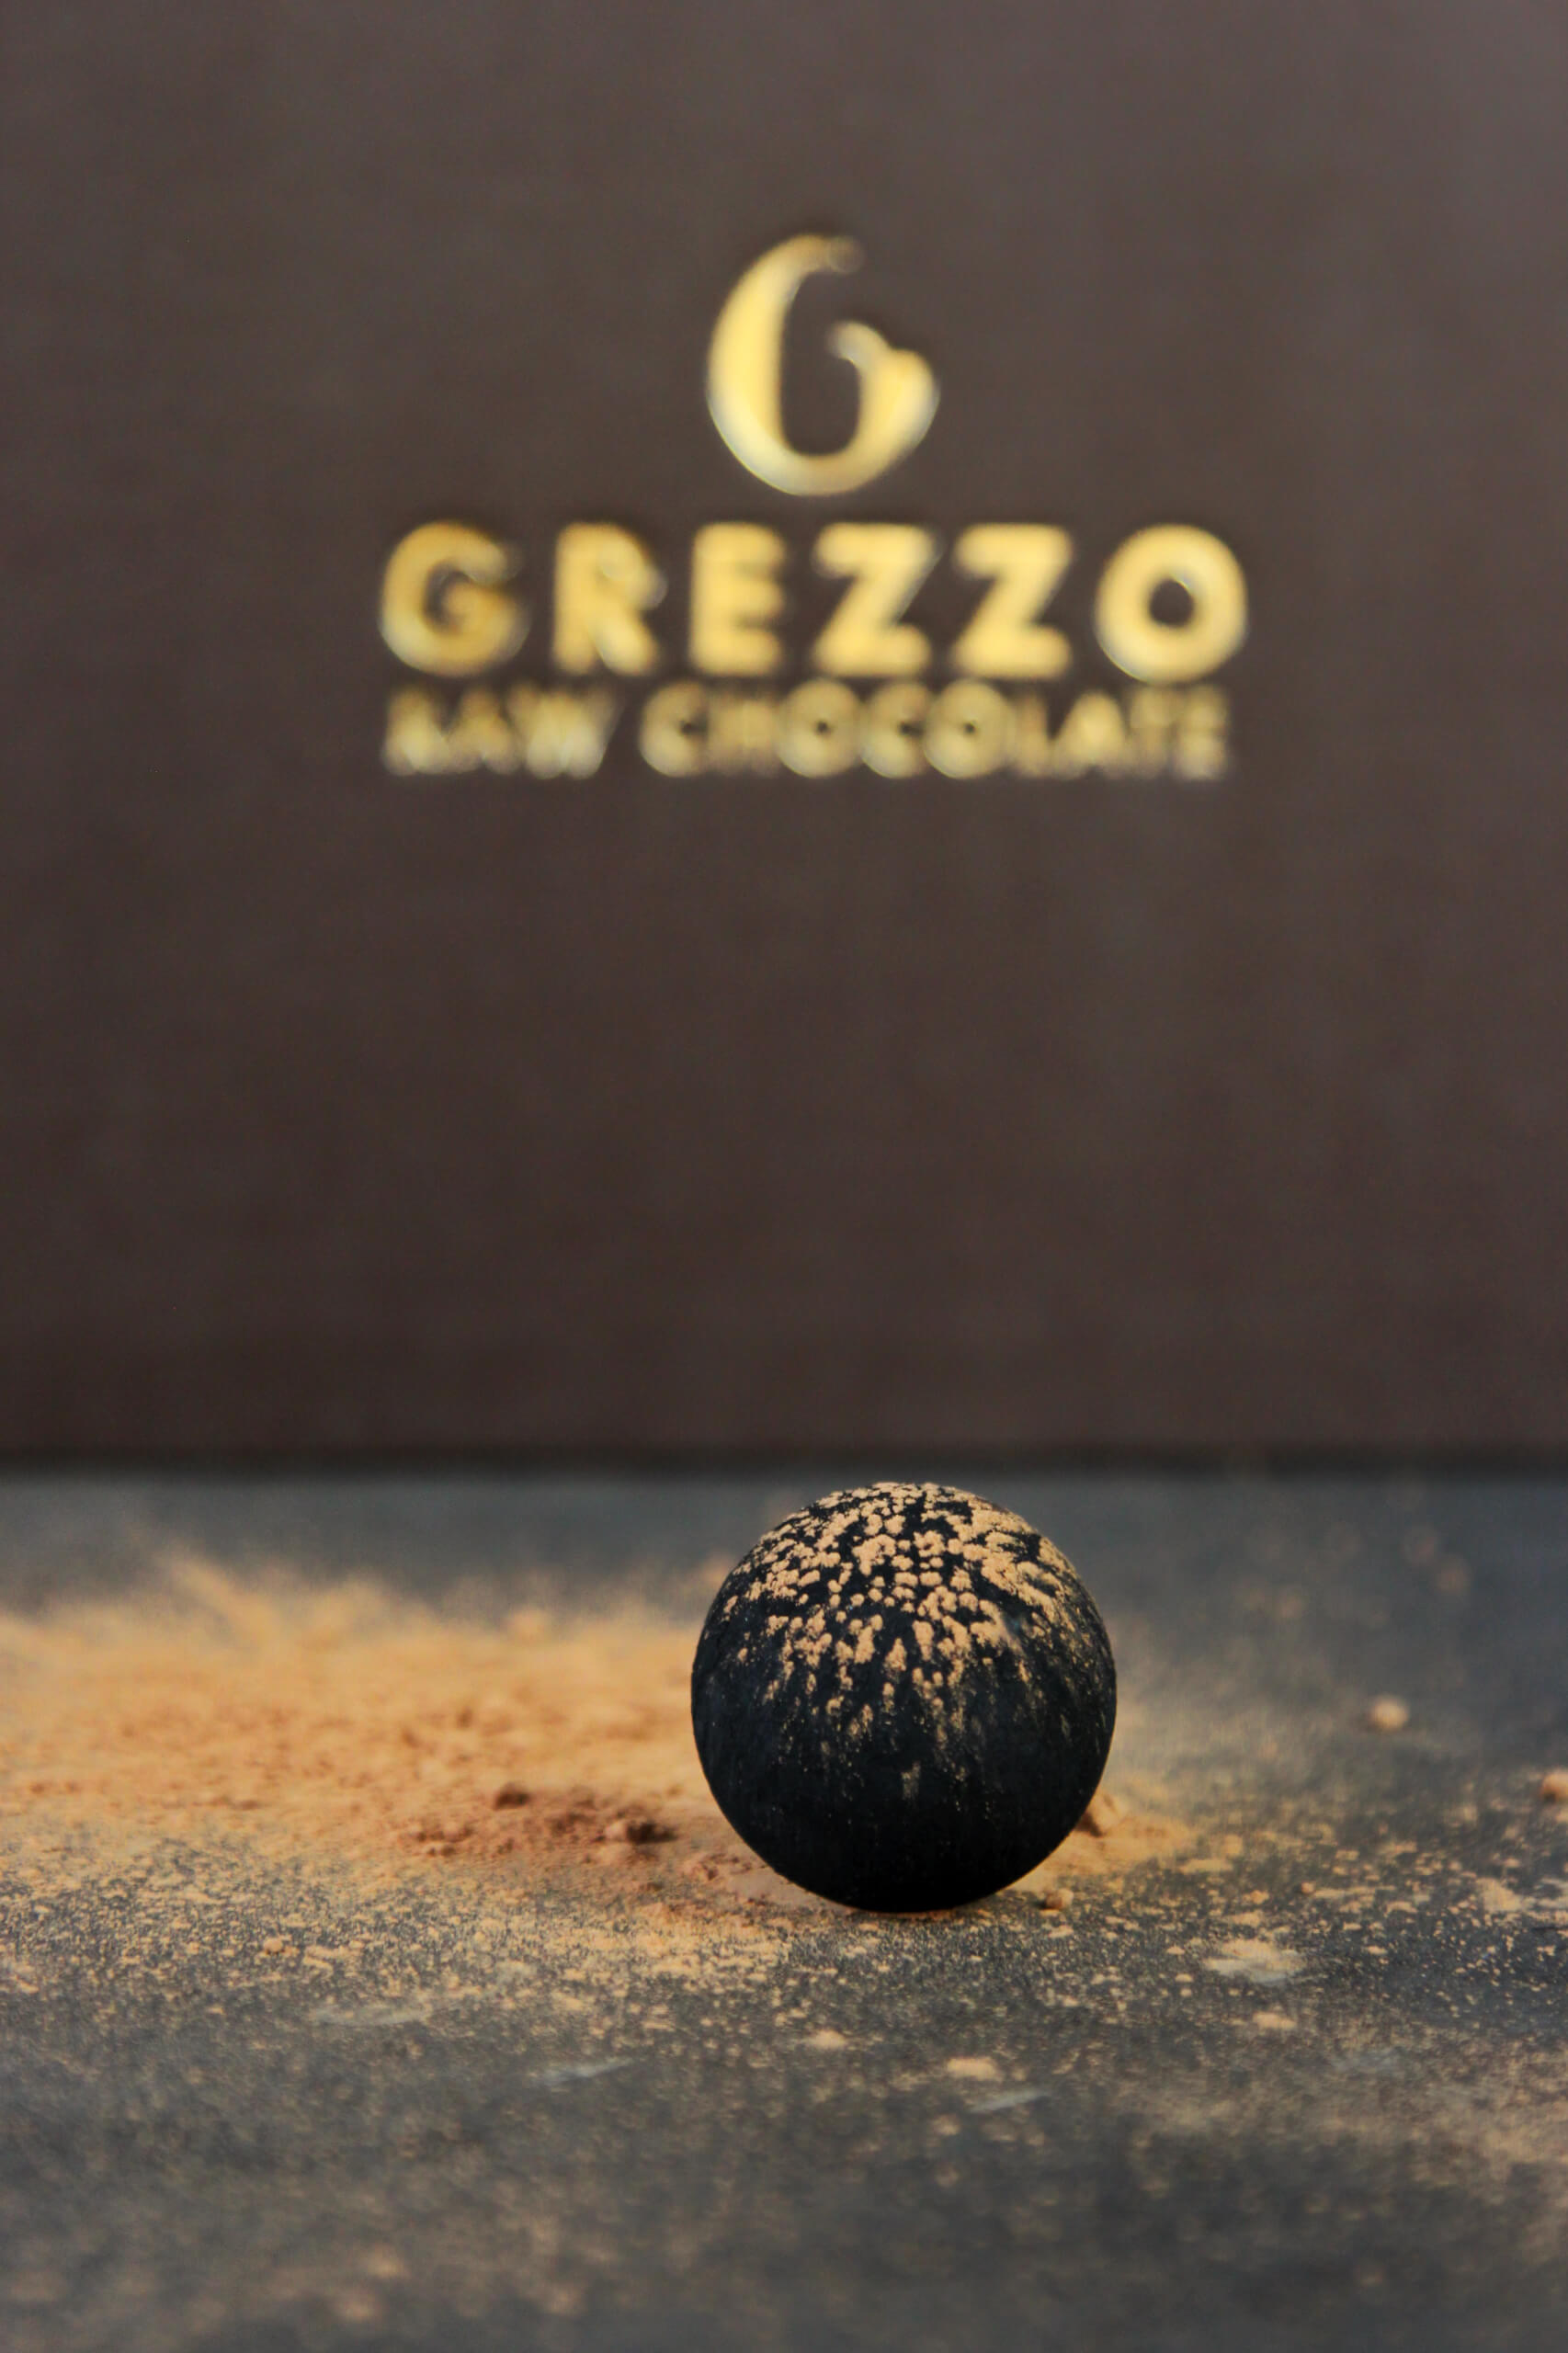 Noir Grezzo Raw Chocolate